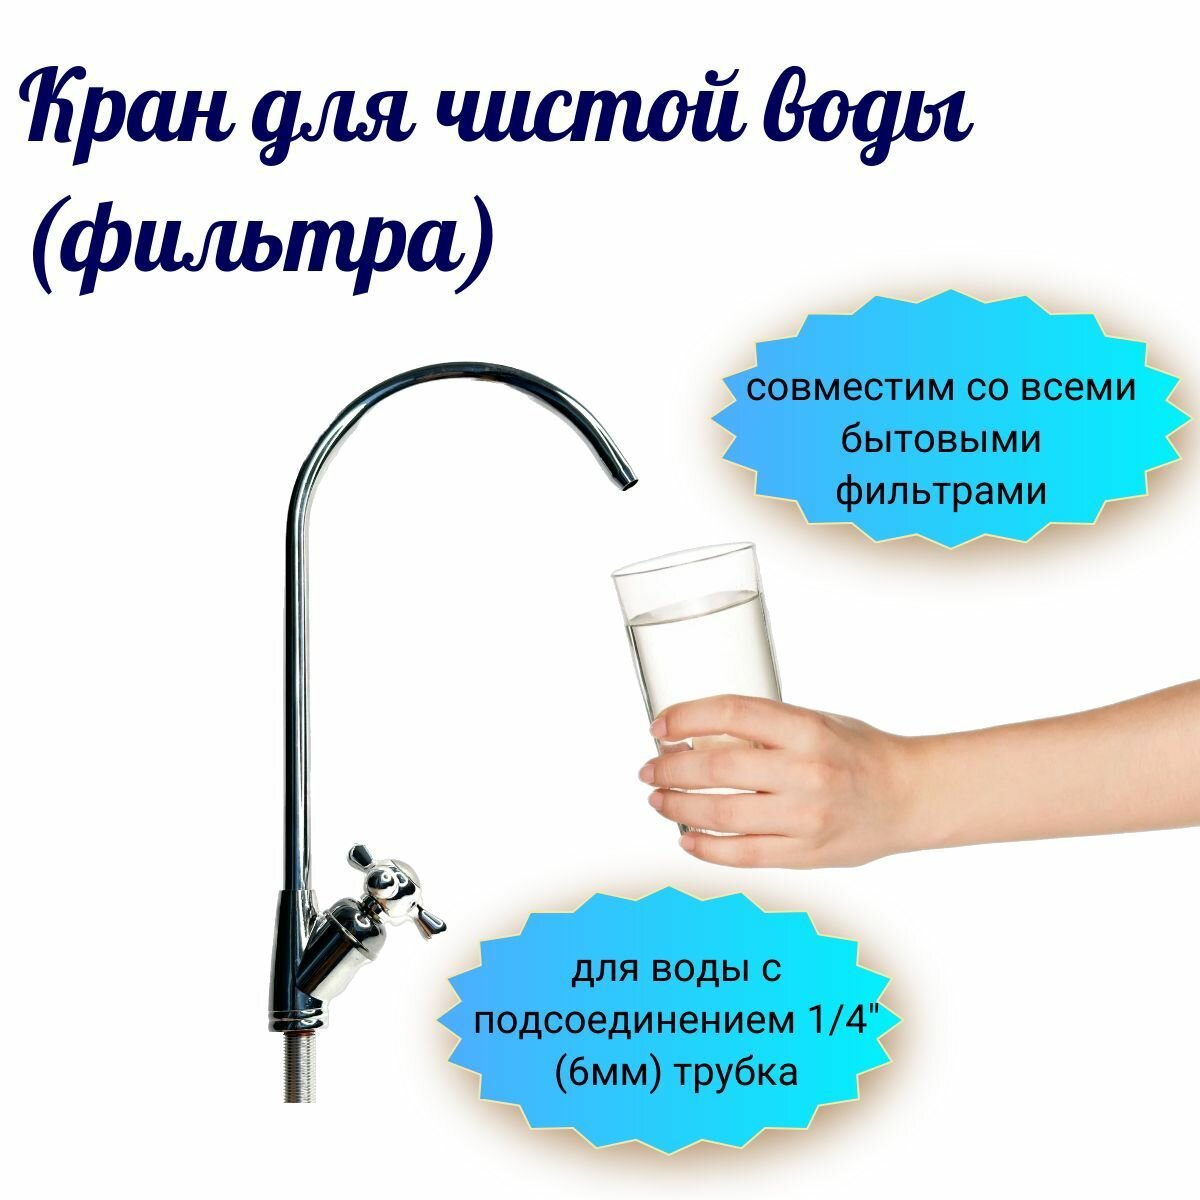 Кран для чистой воды (фильтра) совместим со всеми бытовыми фильтрами для воды с подсоединением 1/4